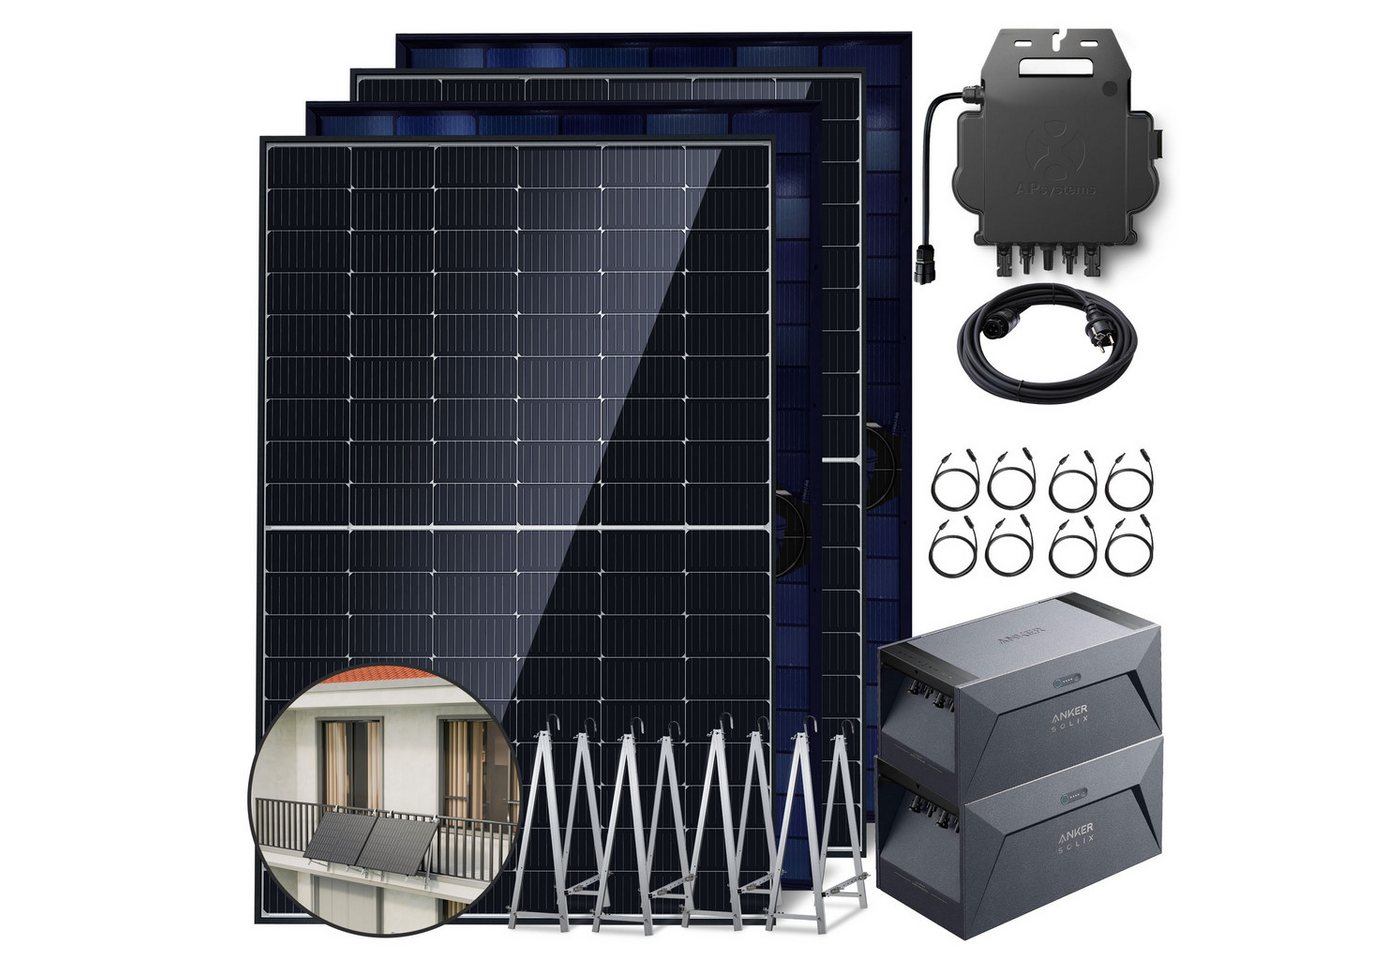 E.For.U Solarmodul Balkonkraftwerk mit Speicher (1760W, 3200Wh), Monokristallin, (Photovoltaik Mini-PV Anlage 2x Solarbank E1600 (1600Wh) und 4x Balkonkraftwerk (440W) Bifazialer Glas-Glas Solarmodule Komplettset, Kostenloses OTA-Update 800W-Mikro-Wechselrichter, 0% MwSt), inkl. 5m Kabel von E.For.U